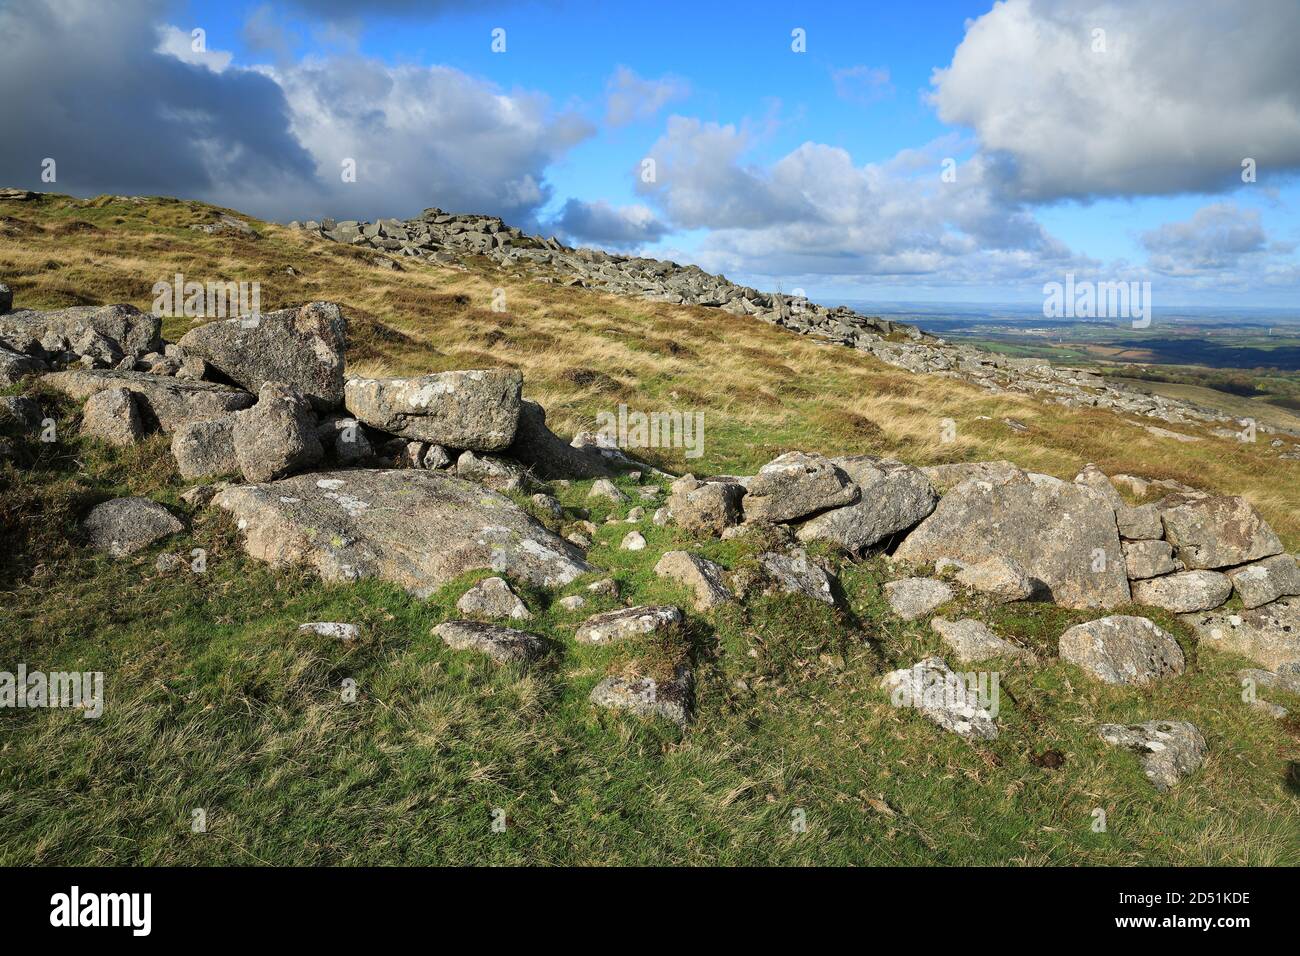 Belstone Tor with Irishman's wall, Belstone, Dartmoor, National Park, Devon, England, UK Stock Photo